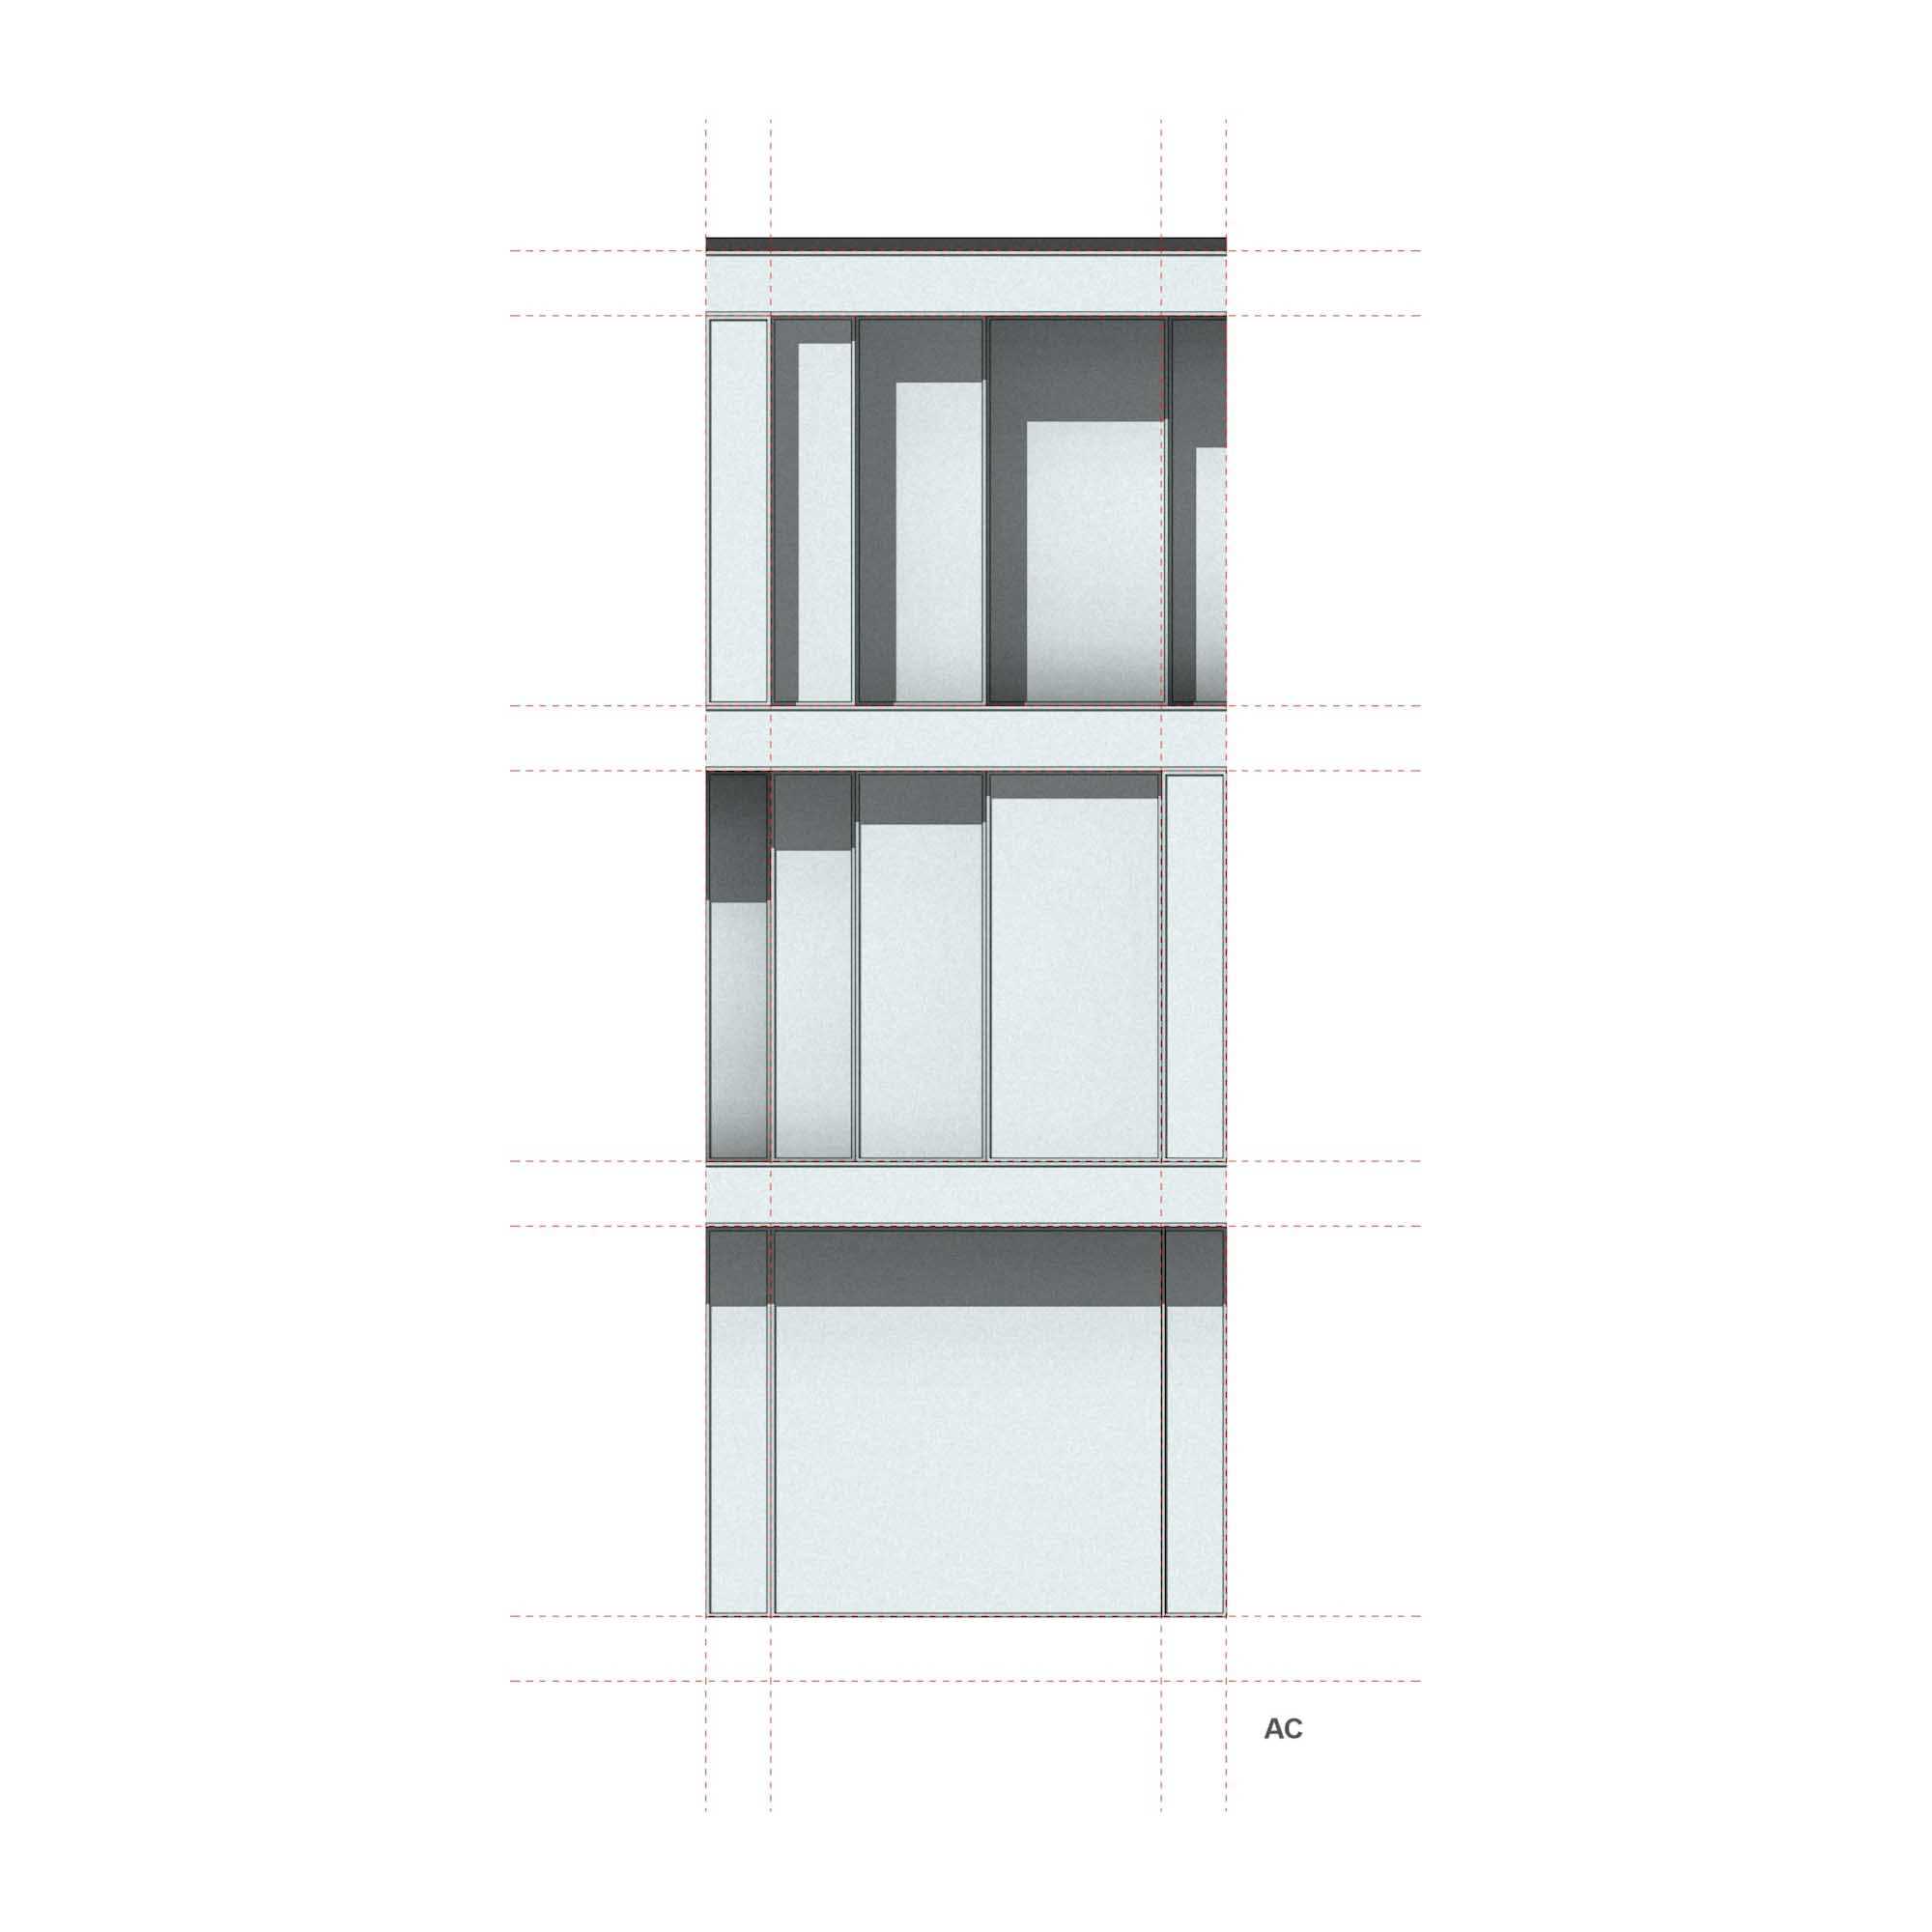 Study of the modular glass facade